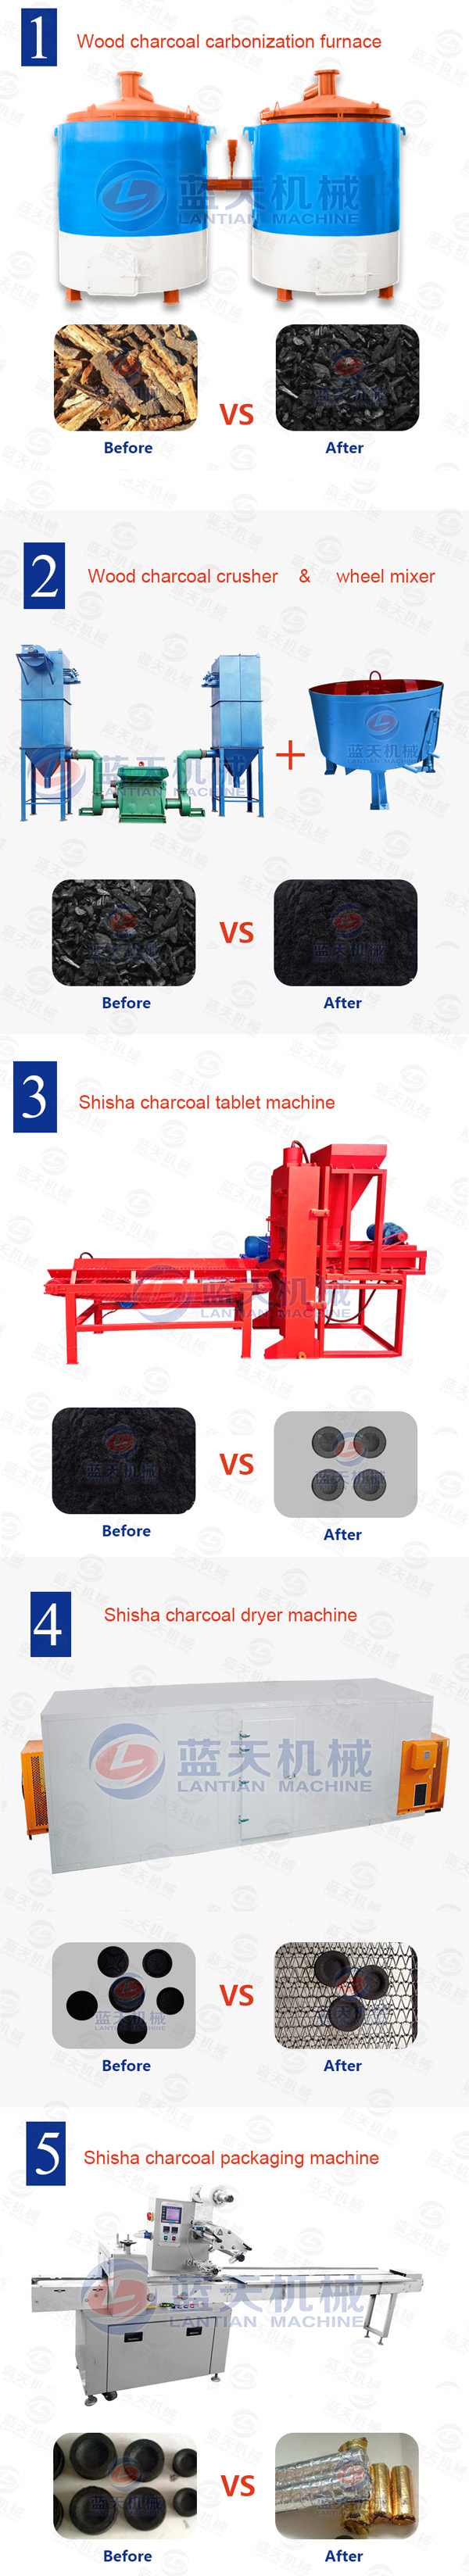 Shisha Charcoal Tablet Machine